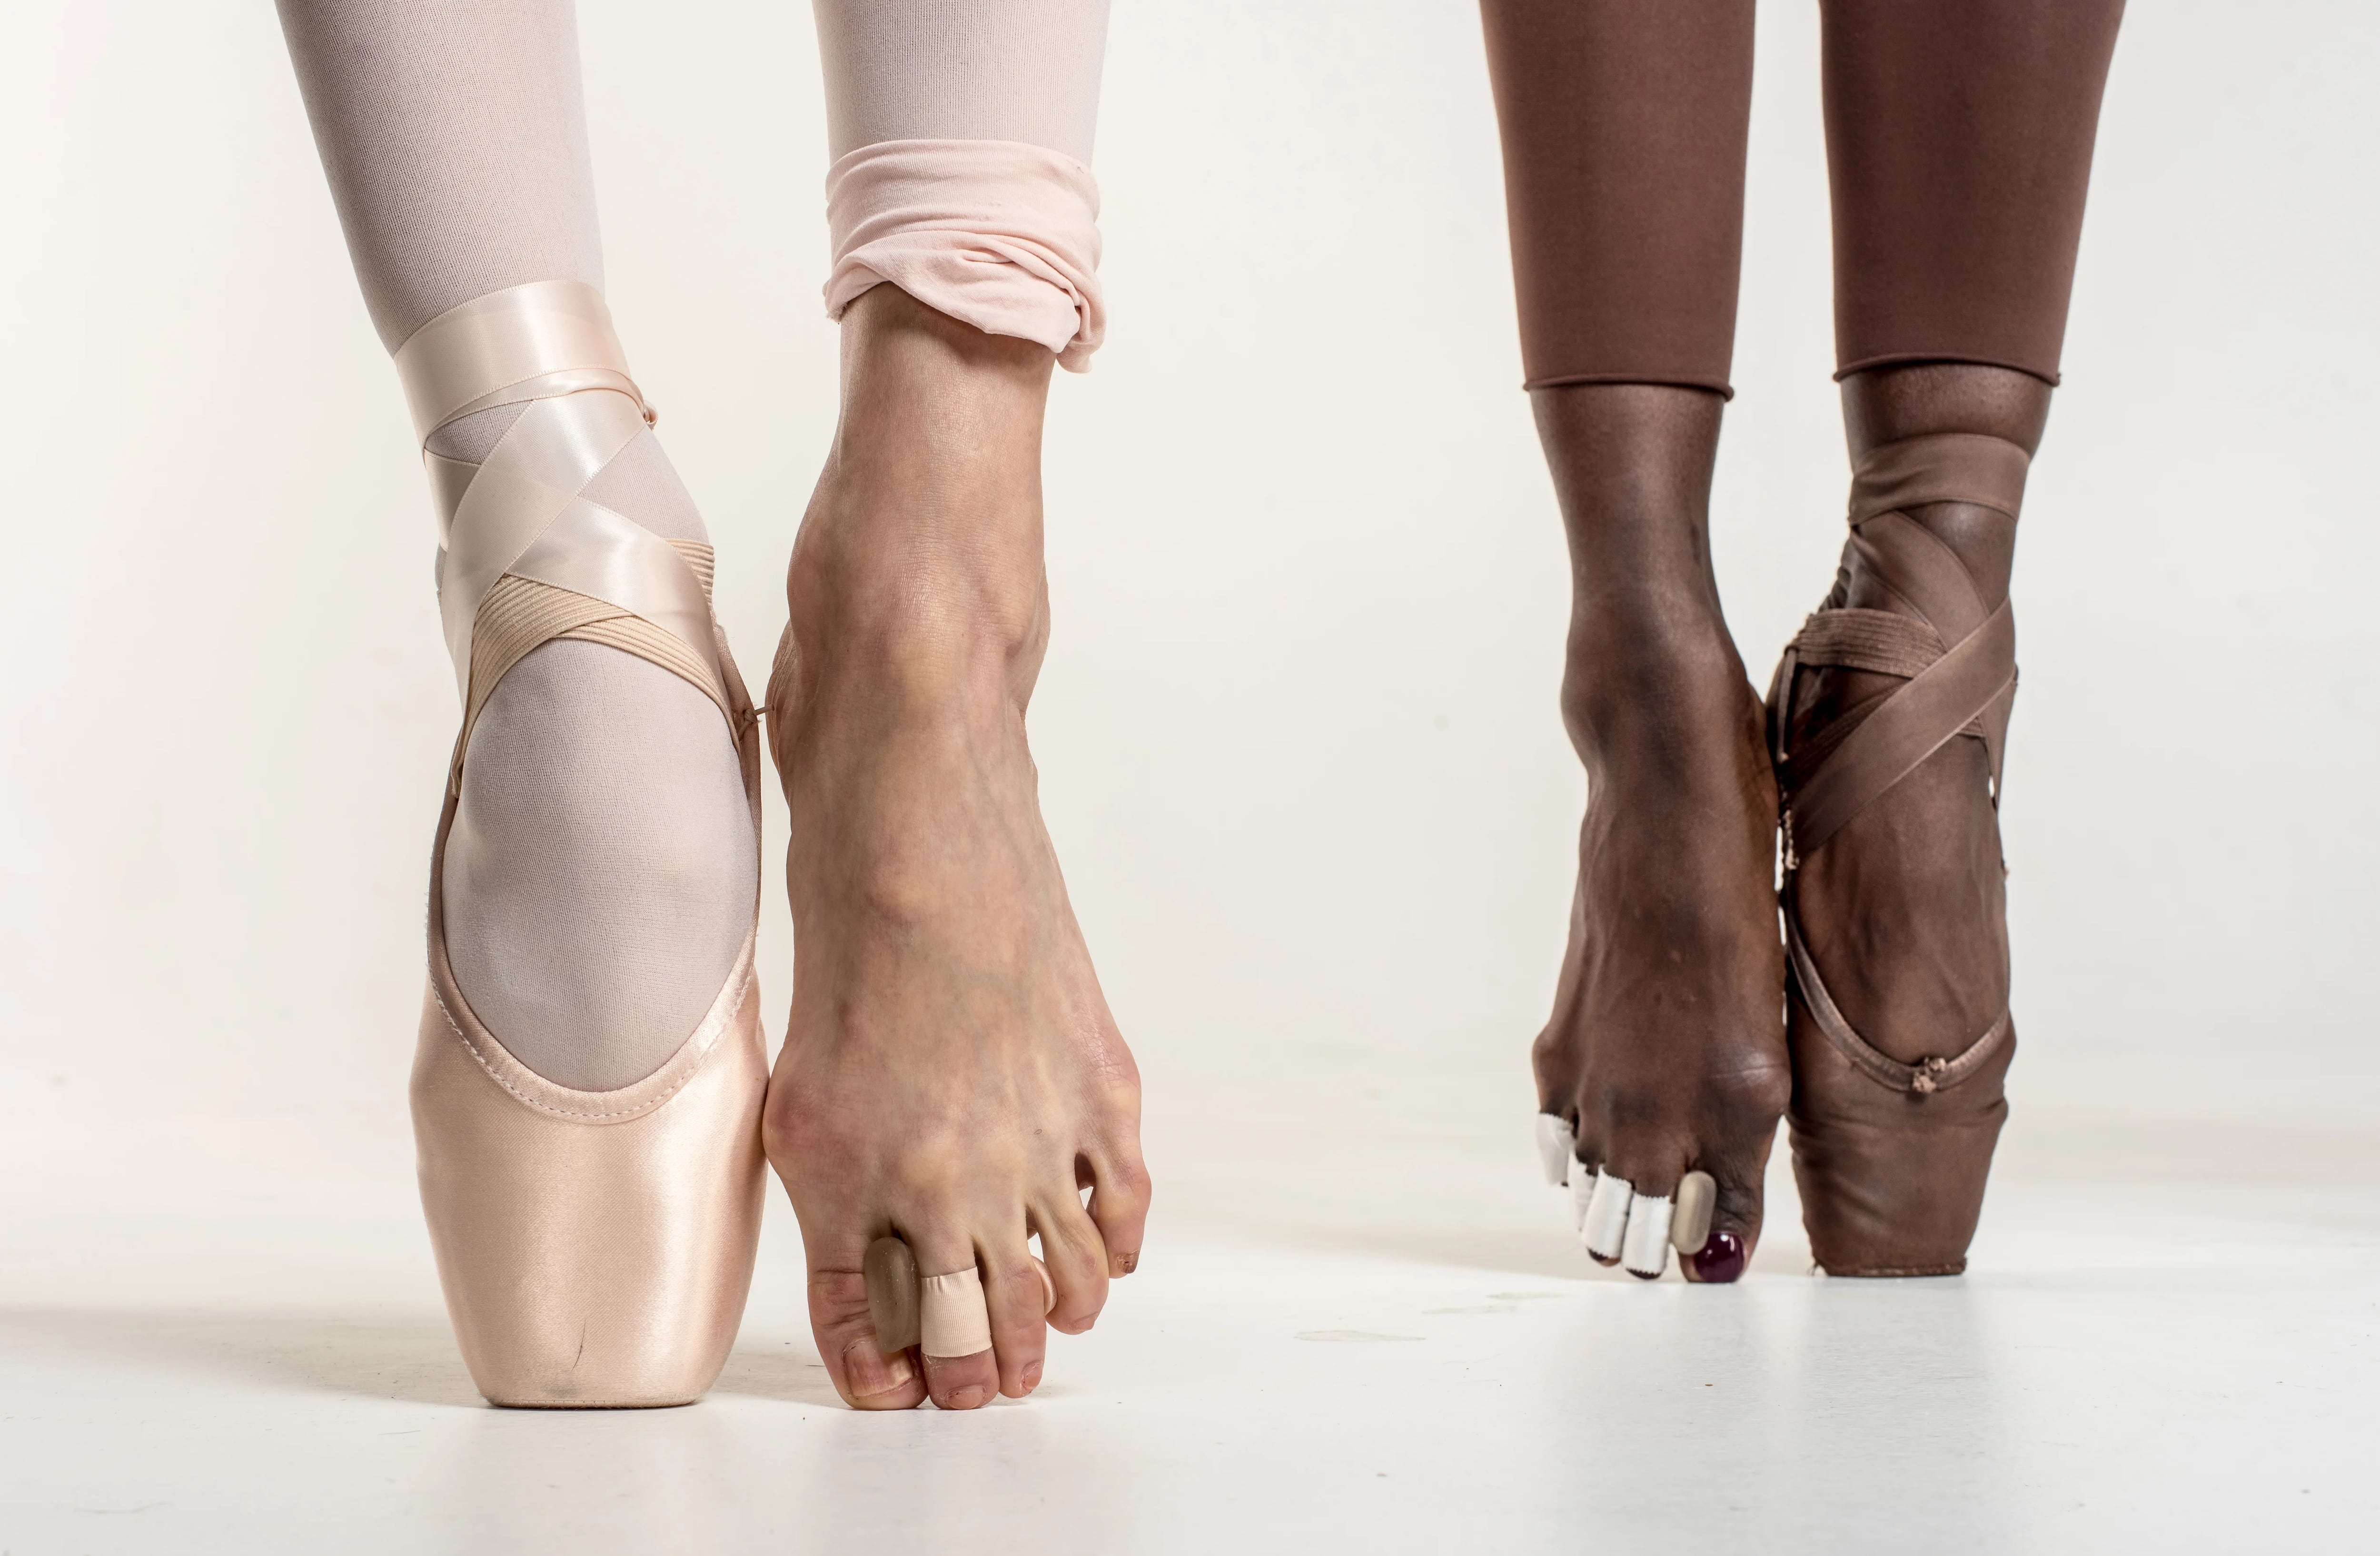 En puntas de pie: la se esconde detrás de esos bellos pasos de ballet Infobae